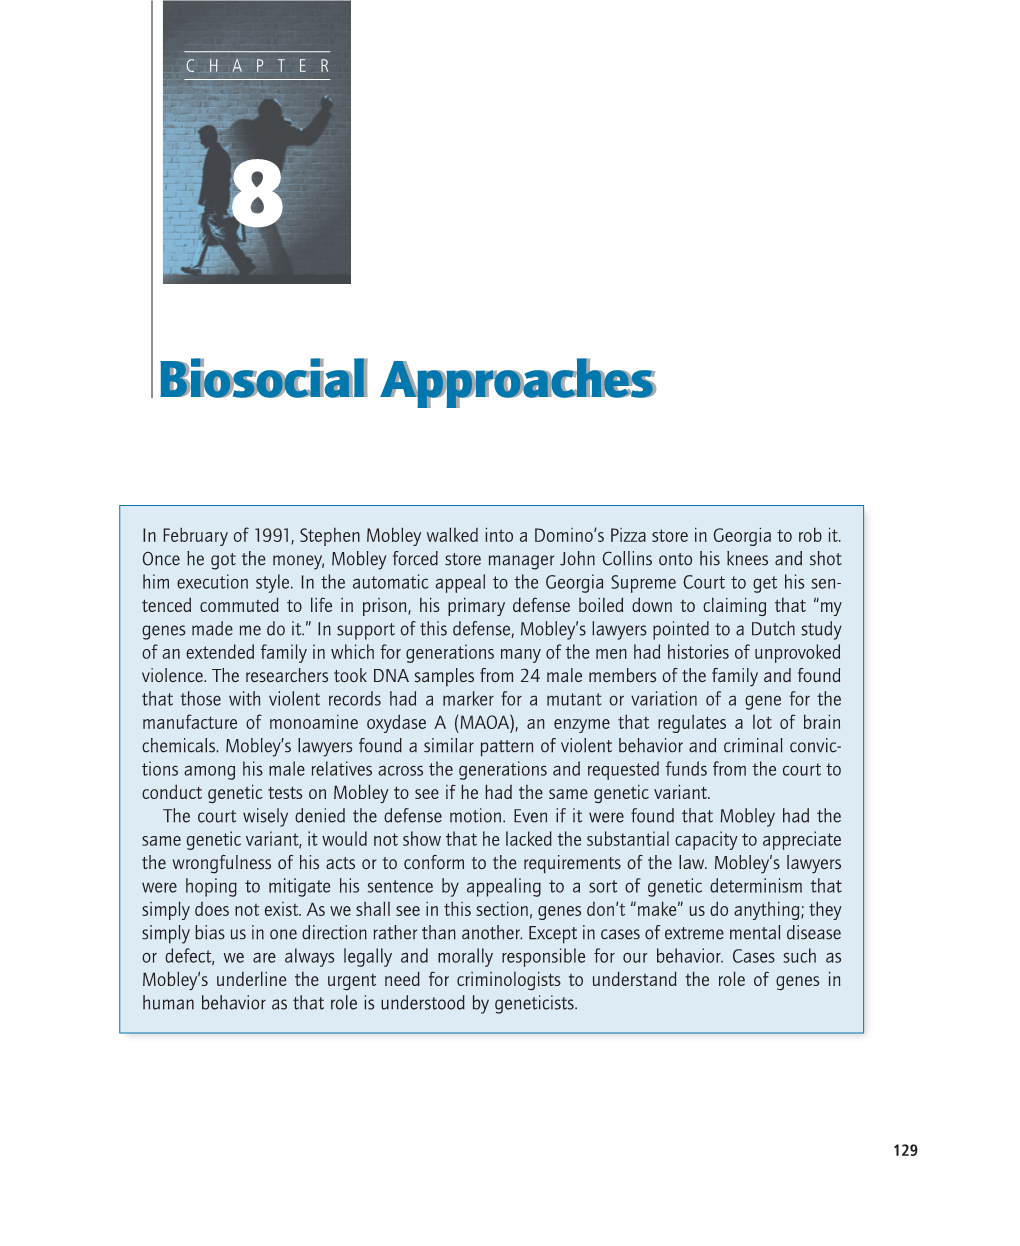 Biosocial Approachesapproaches